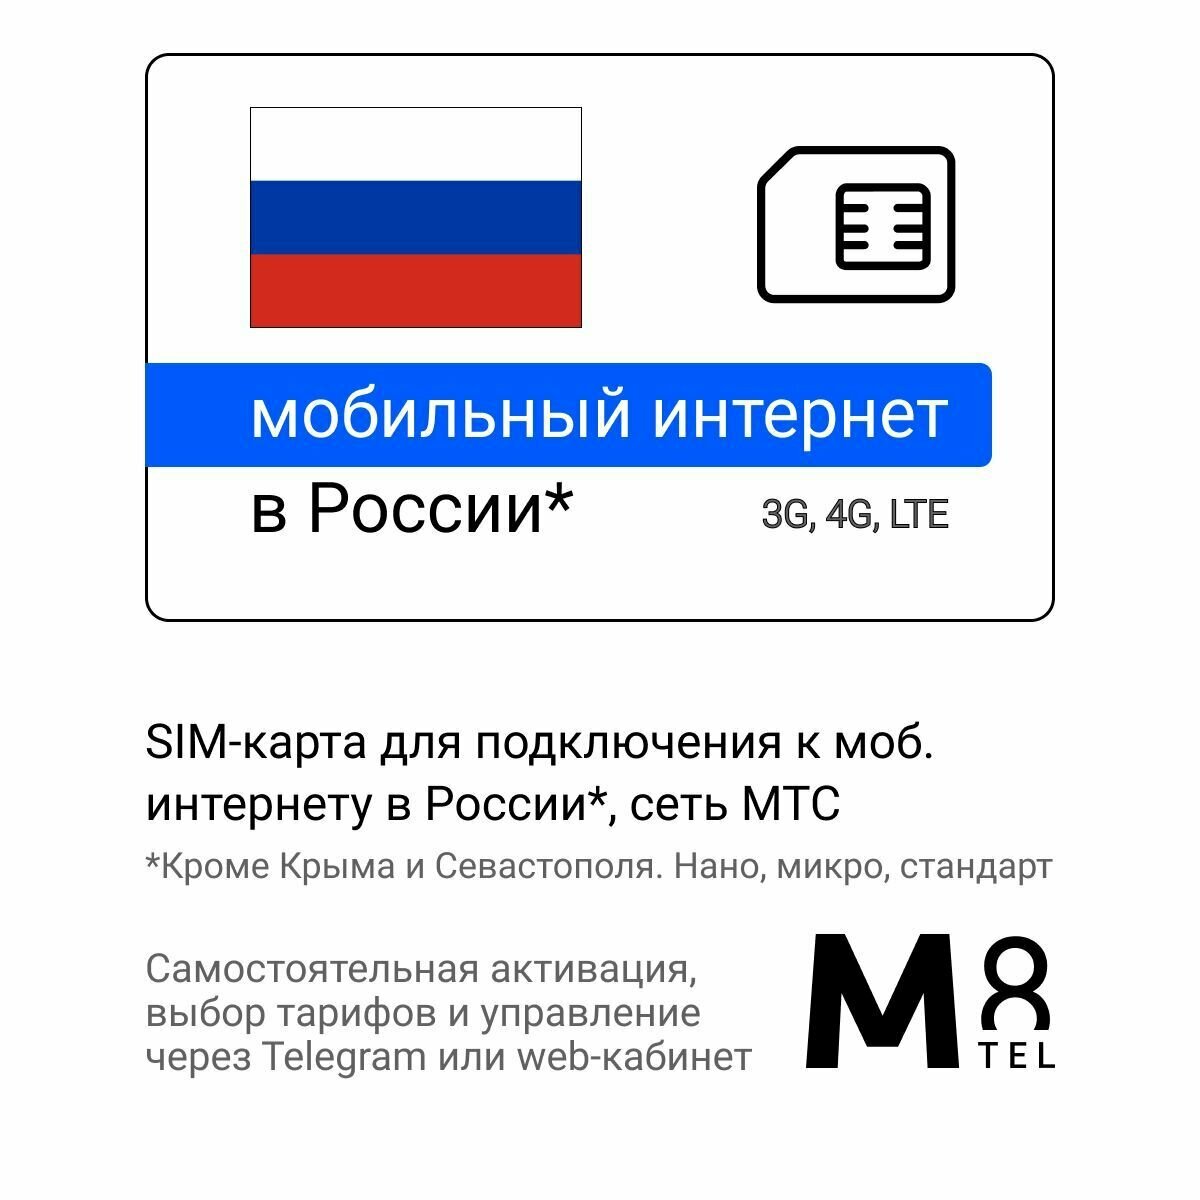 SIM-карта для России от М8 (нано микро стандарт). Сеть МТС